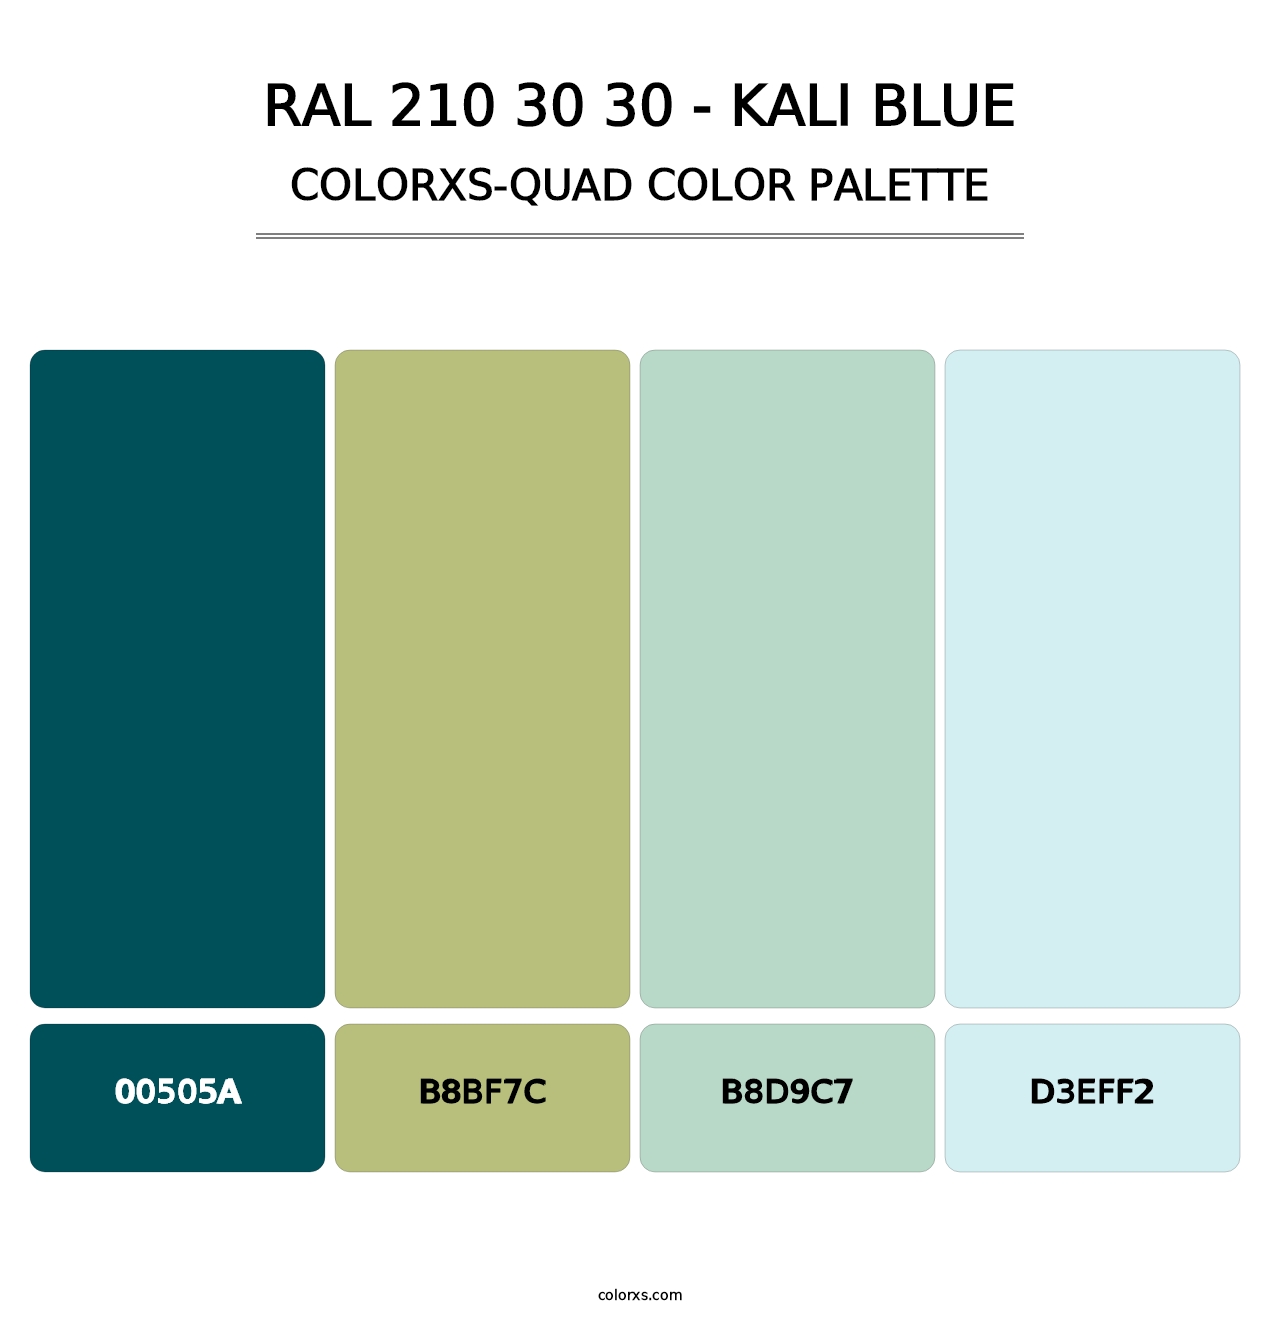 RAL 210 30 30 - Kali Blue - Colorxs Quad Palette